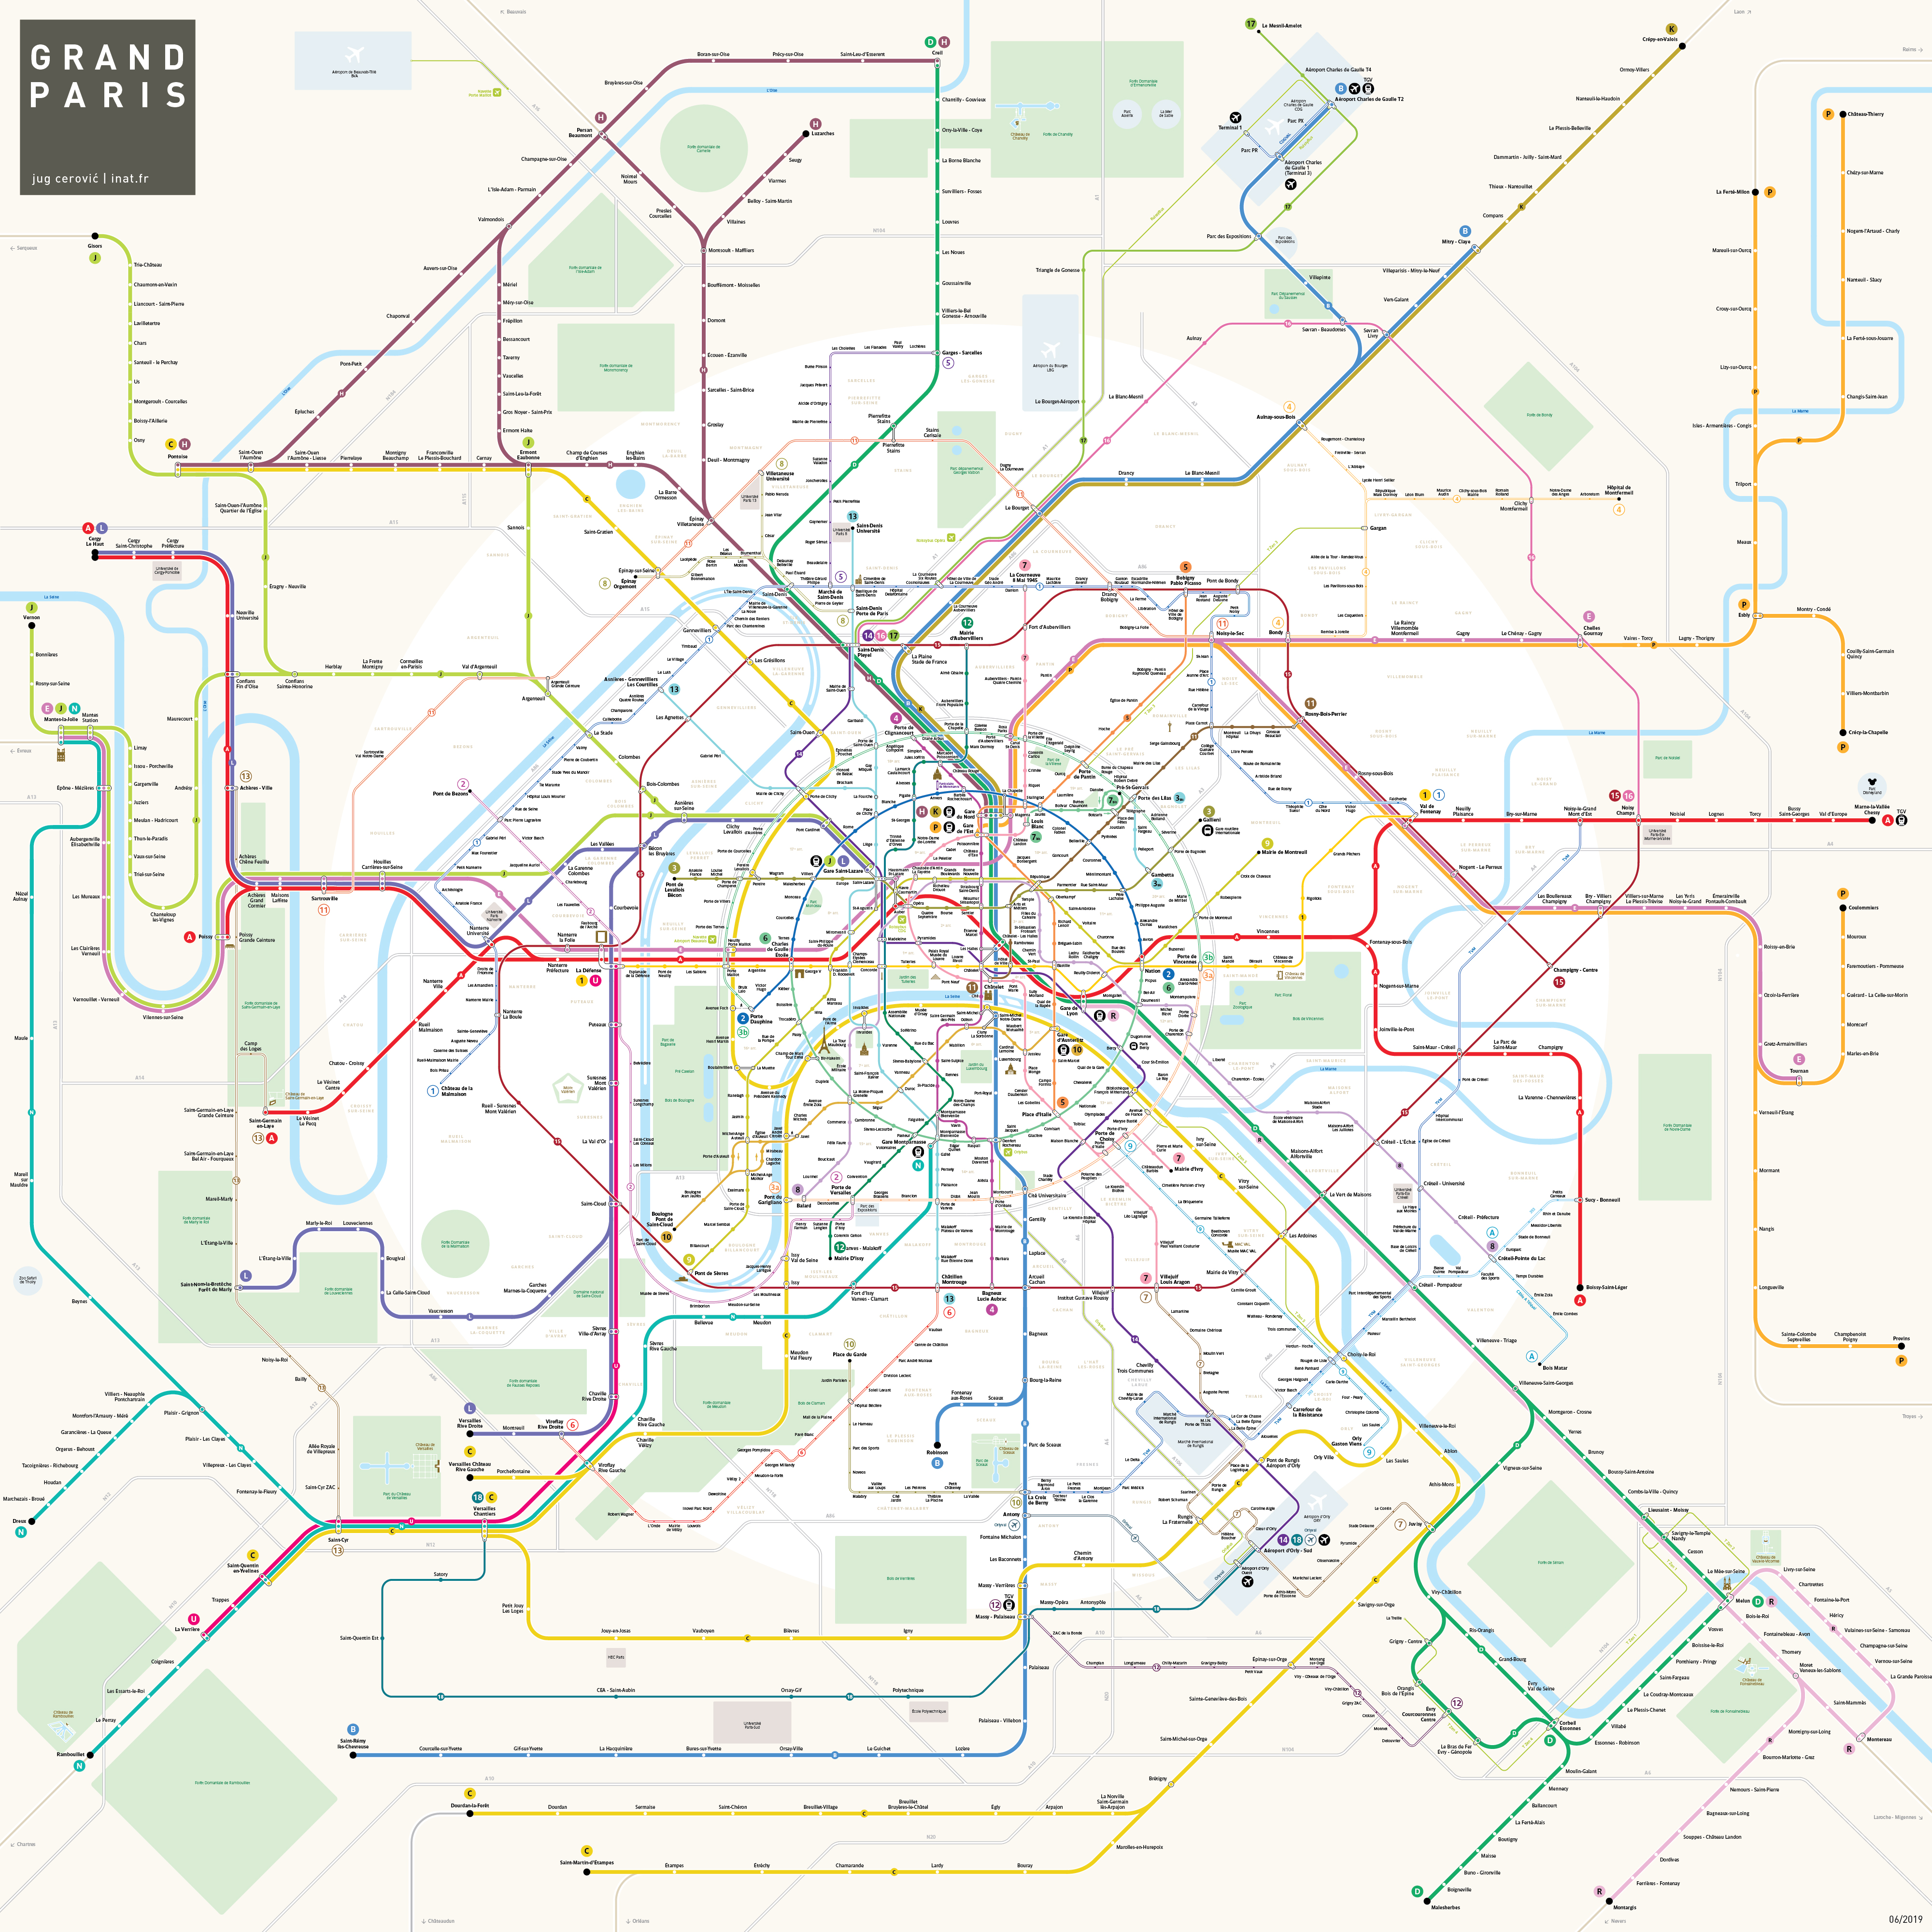 Plan du Grand Paris